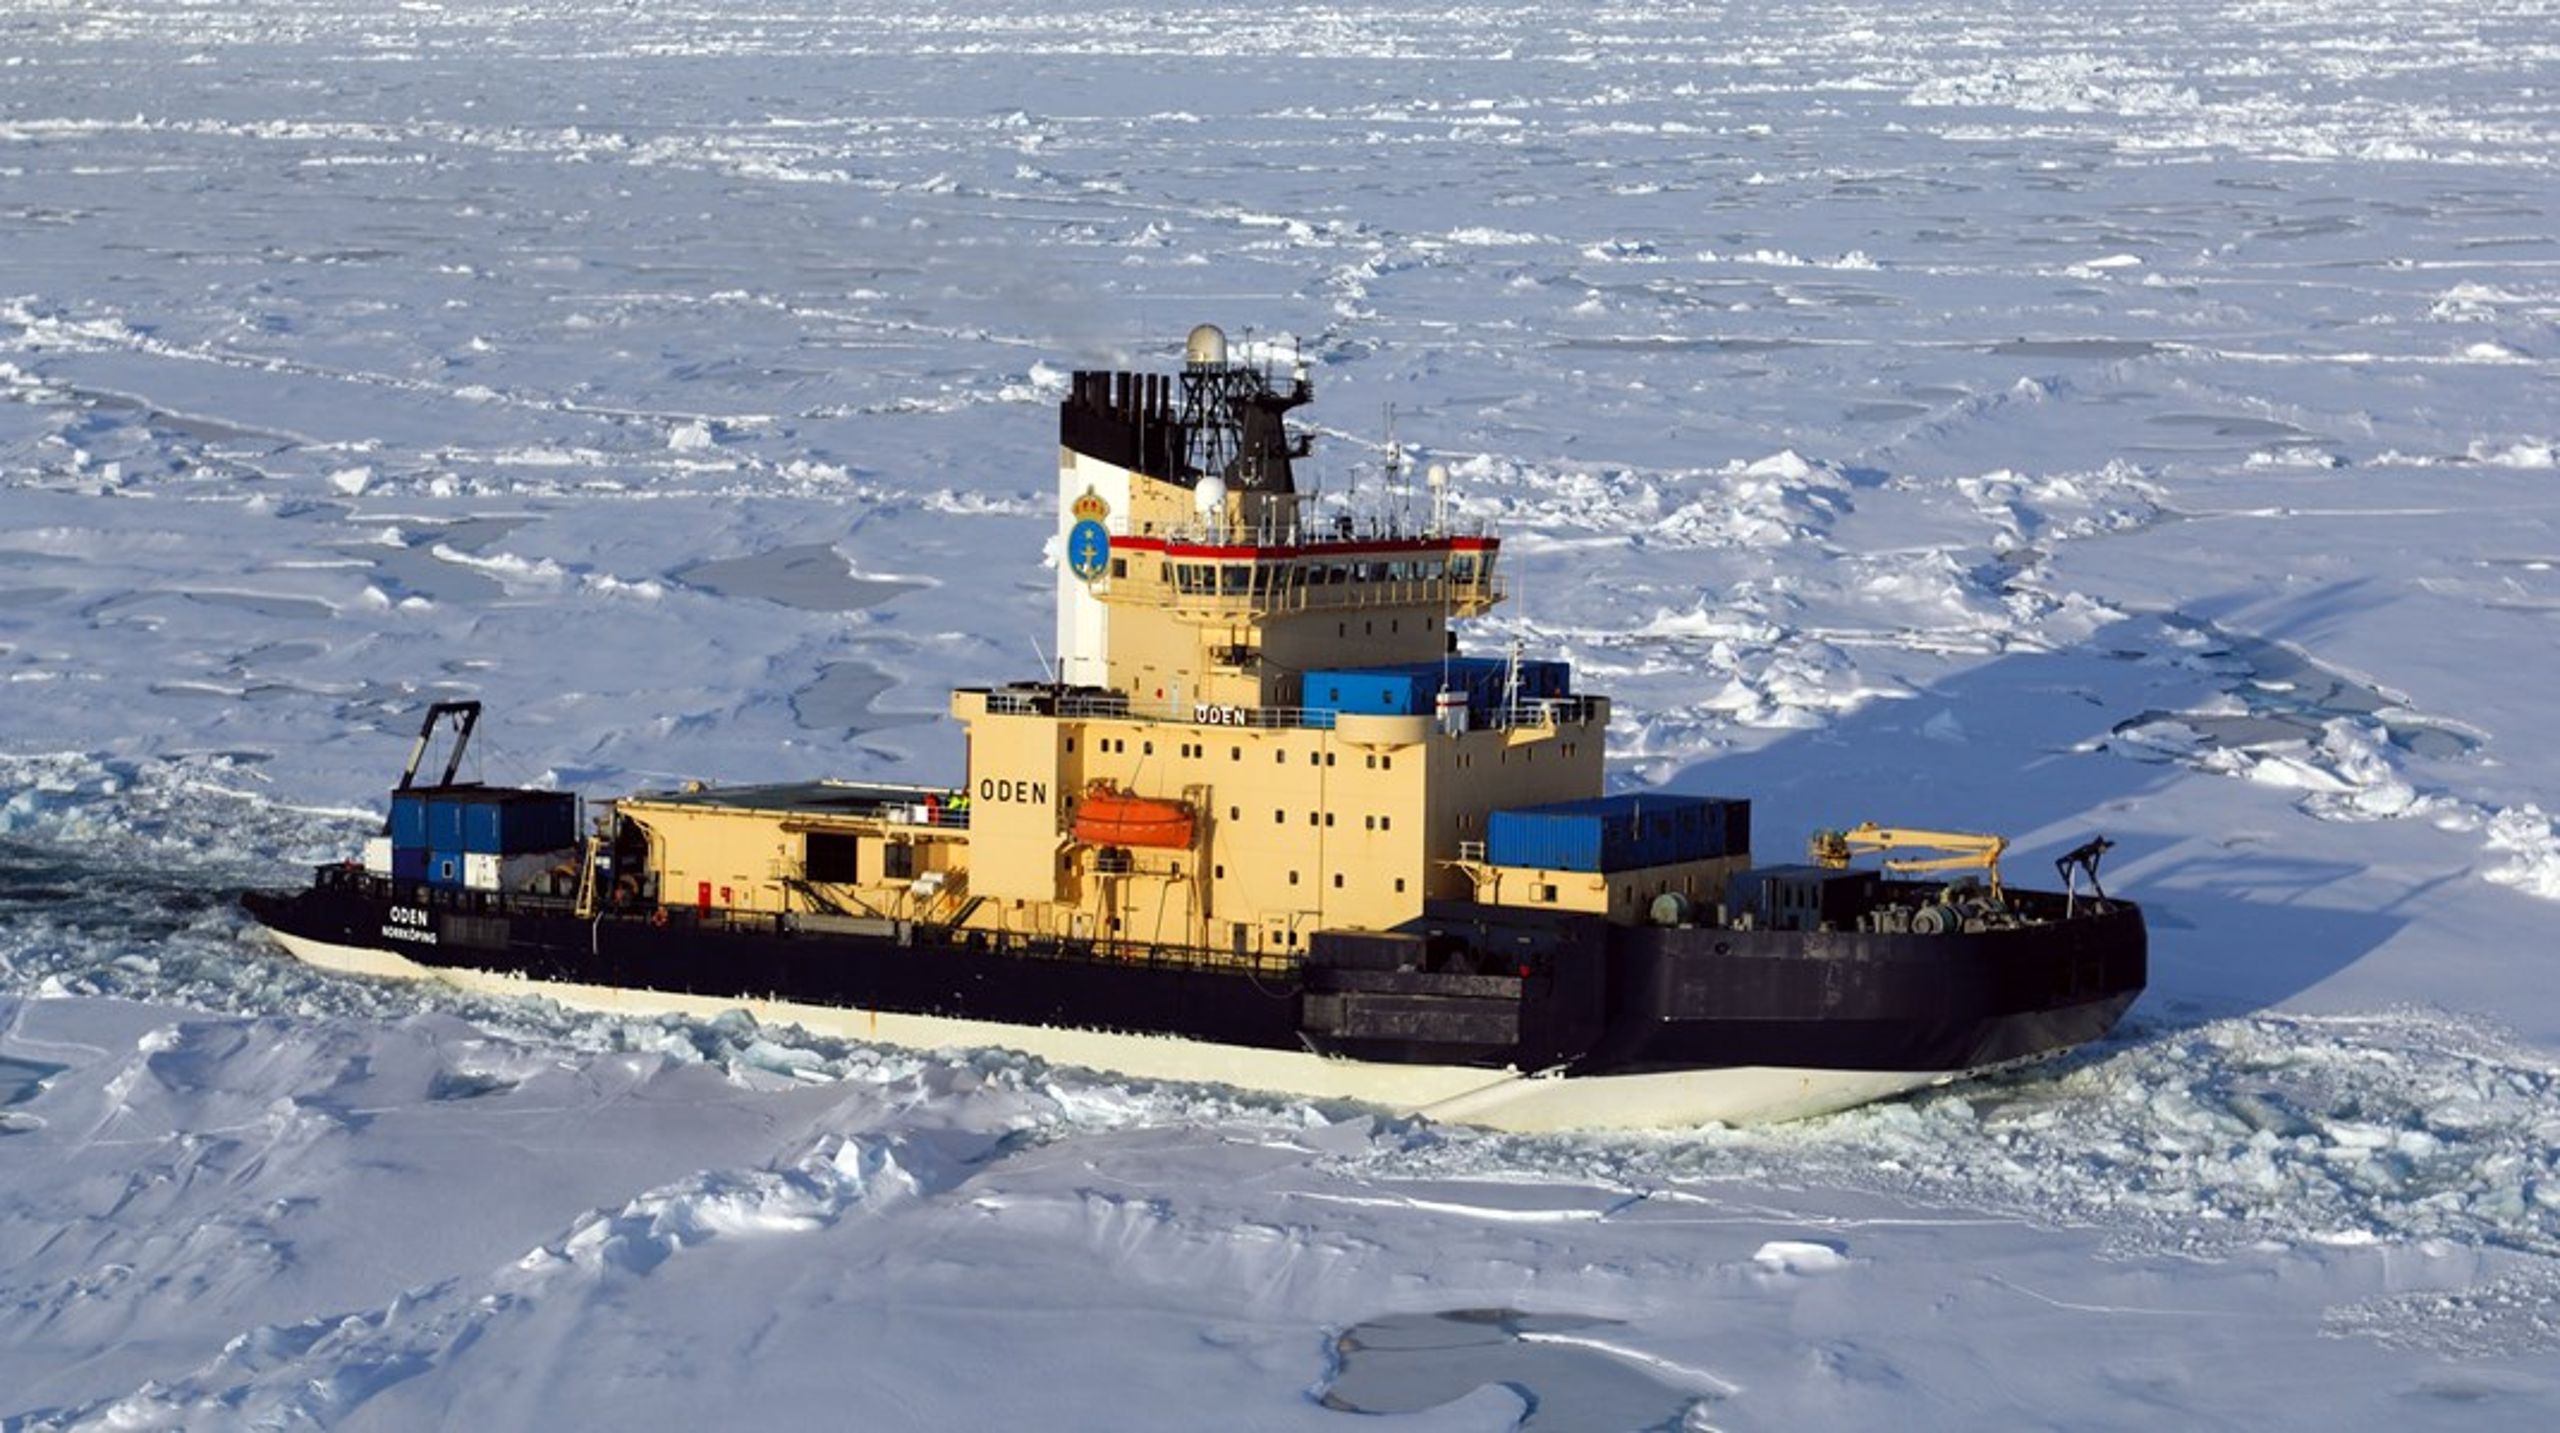 ”Oden är den starkaste forskningsisbrytaren i hela det fria väst.” säger Polarforskningssekretariatets direktör Katarina Gårdfeldt.